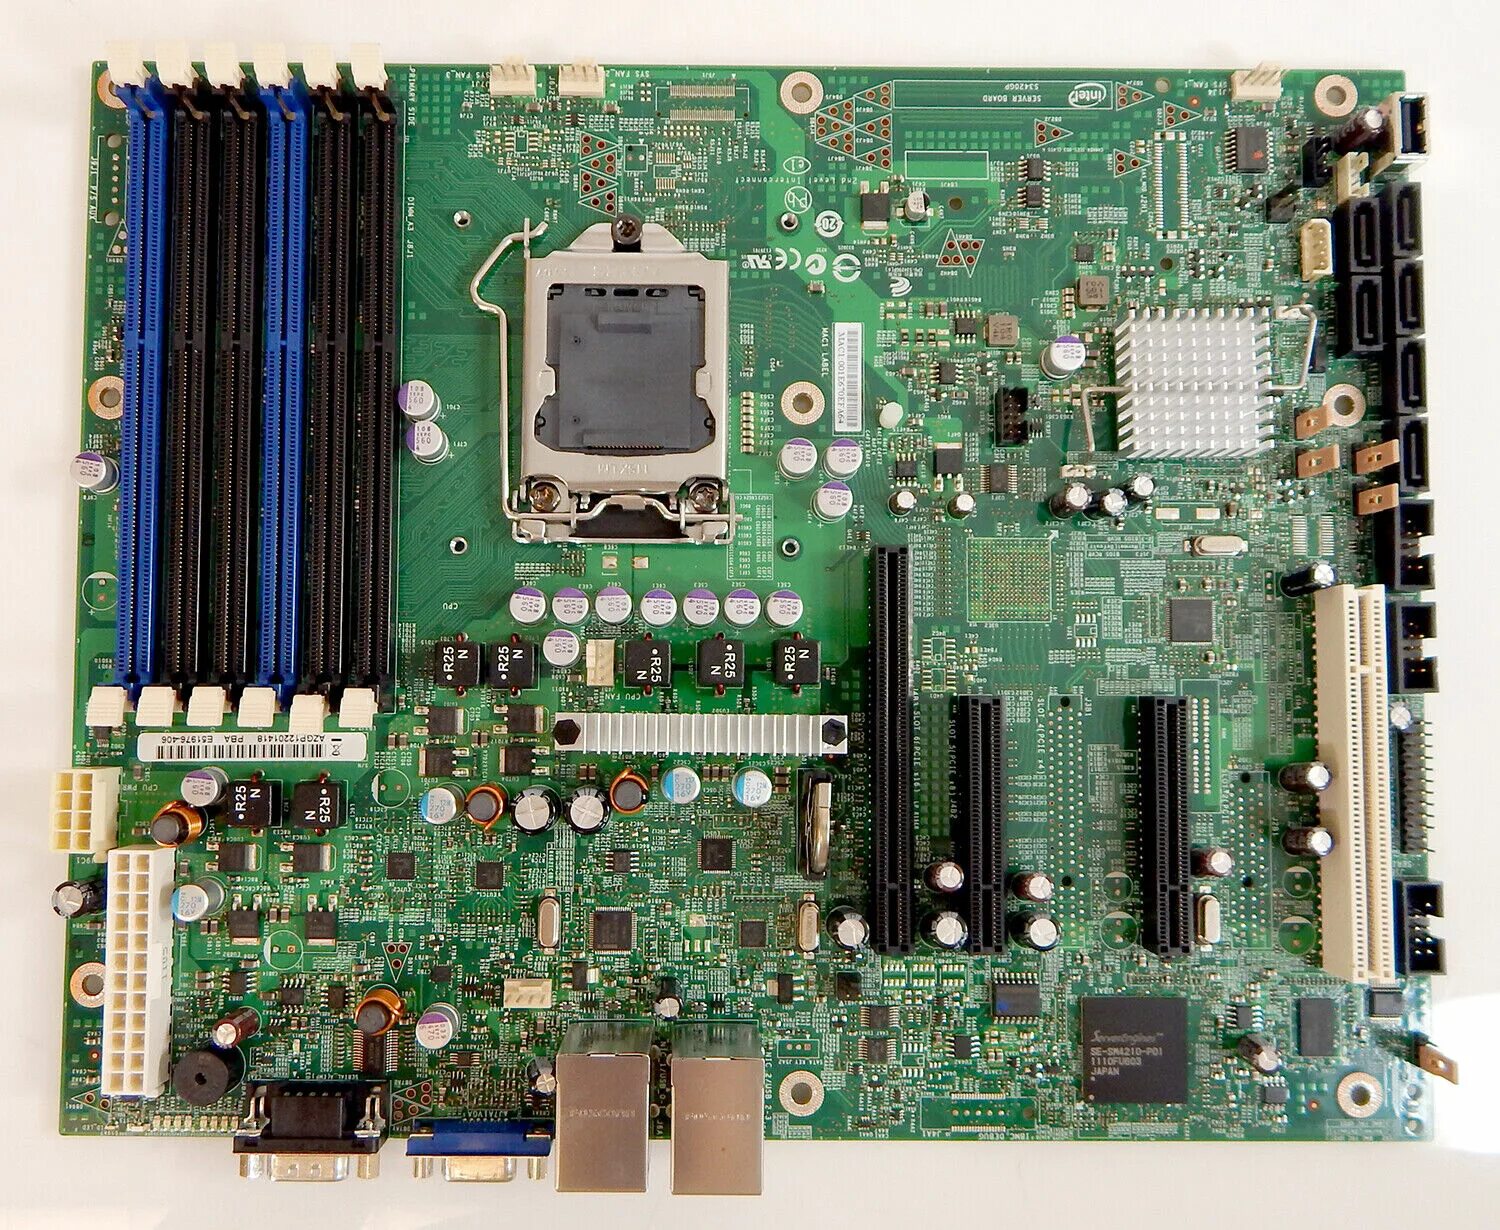 Intel server board. 1156 Intel Server Board s3420gp. Server Board s3420gp. Системная плата Intel grosse point s3420gp. Server Board s5500bc.